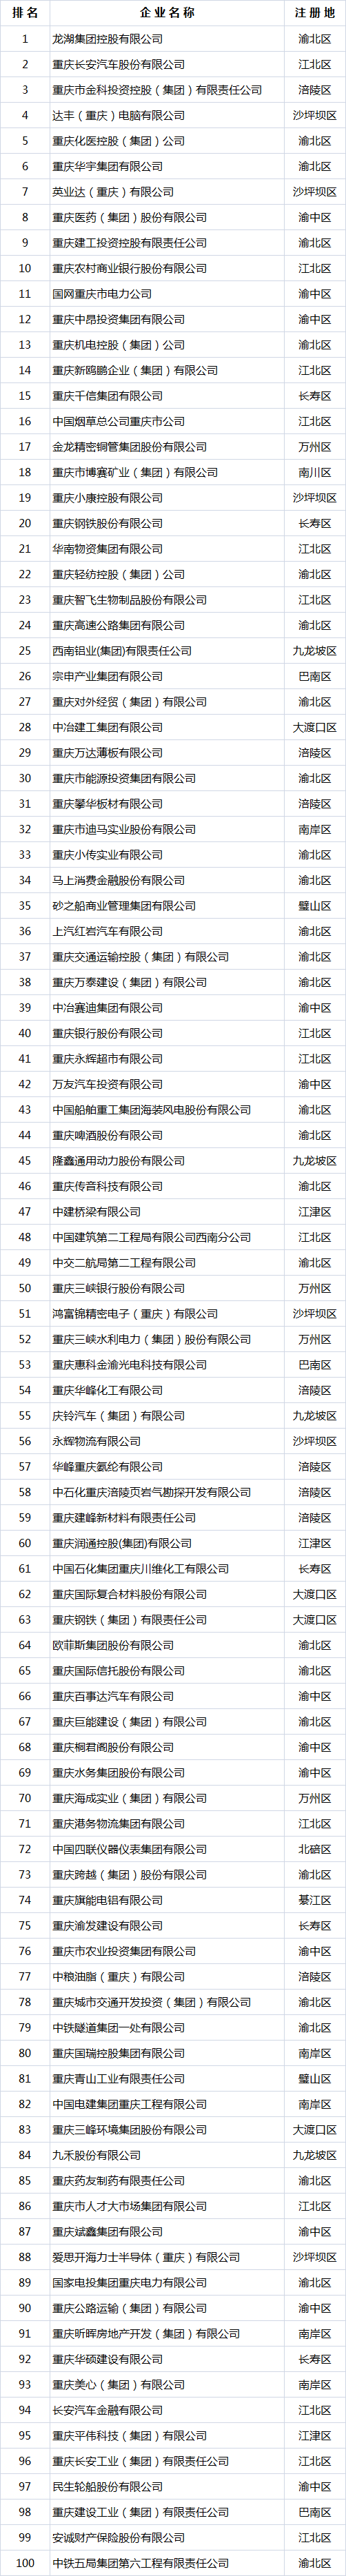 2022重庆100强企业出炉 18张新面孔上榜